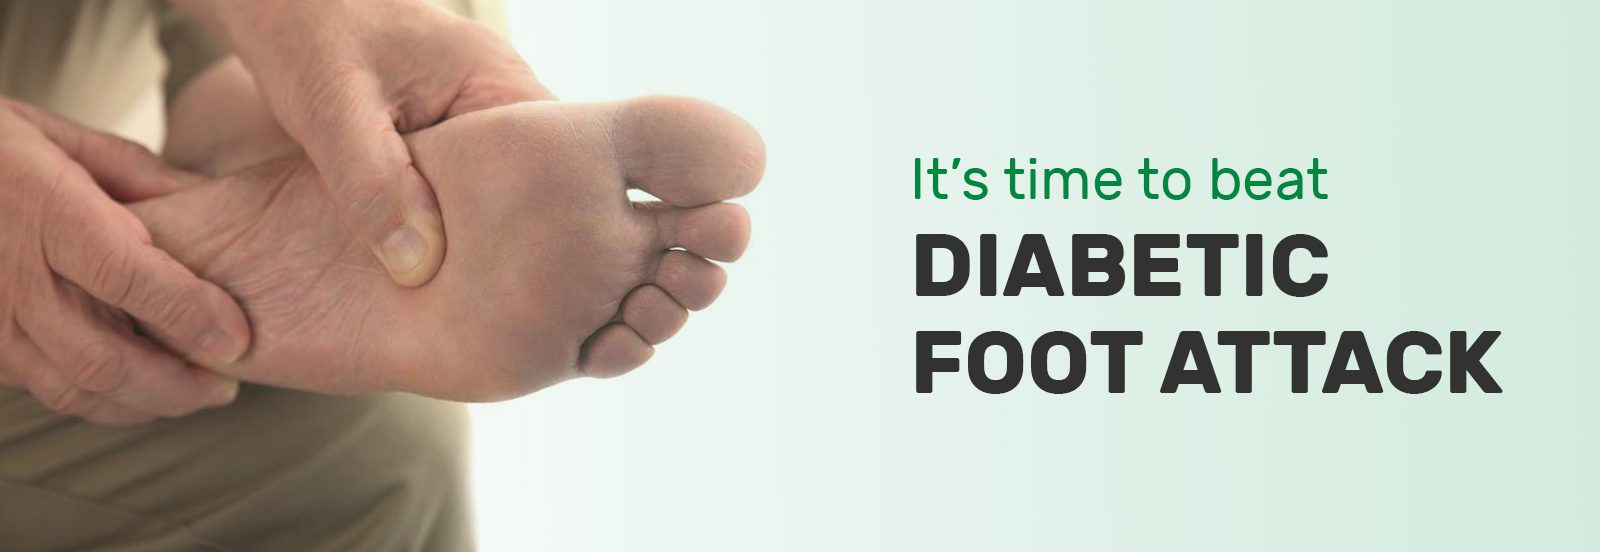 diabetic_foot_attack